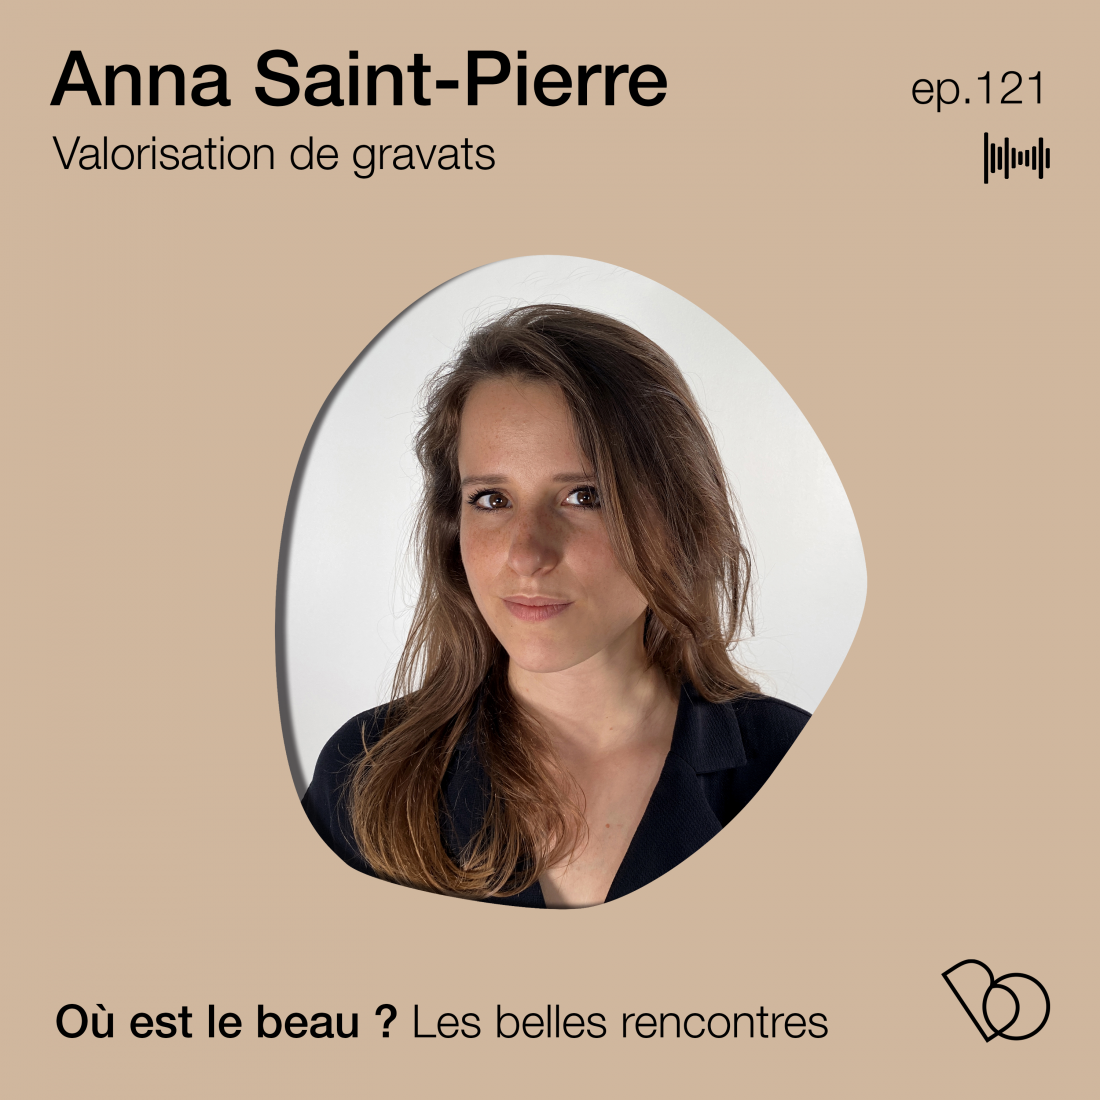 vignette-Anna-Saint-Pierre-ou-est-le-beauvignette-Anna-Saint-Pierre-ou-est-le-beau